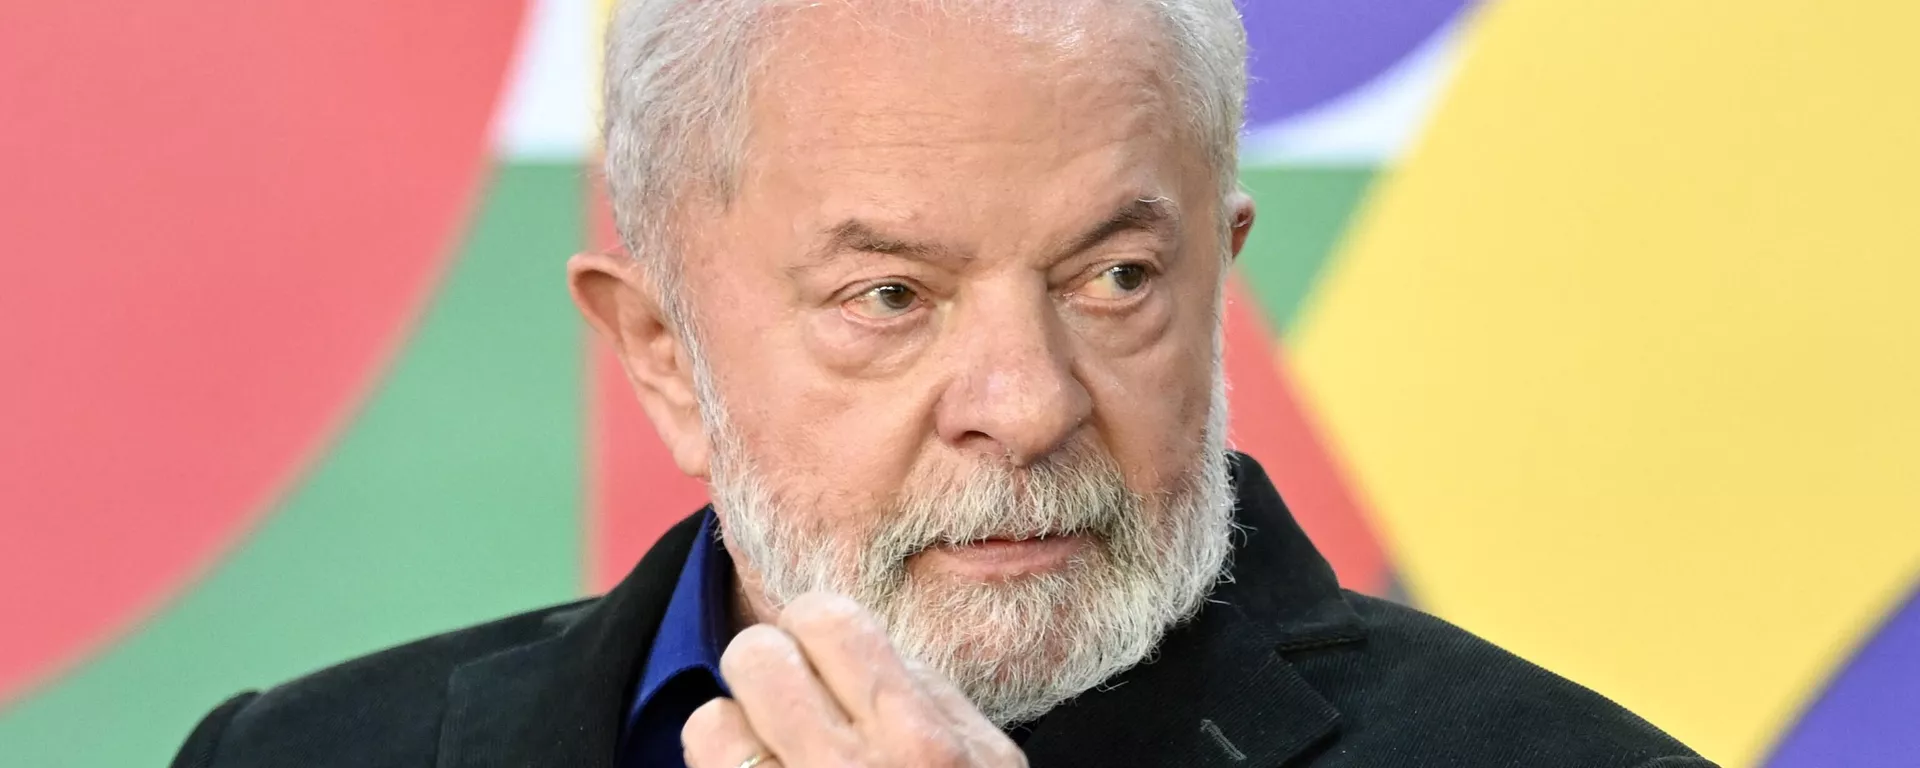 O presidente brasileiro Luiz Inácio Lula da Silva gesticula durante a assinatura da nova lei que aumenta o reajuste anual do salário mínimo no Palácio do Planalto, em Brasília, em 28 de agosto de 2023 - Sputnik Brasil, 1920, 29.08.2023